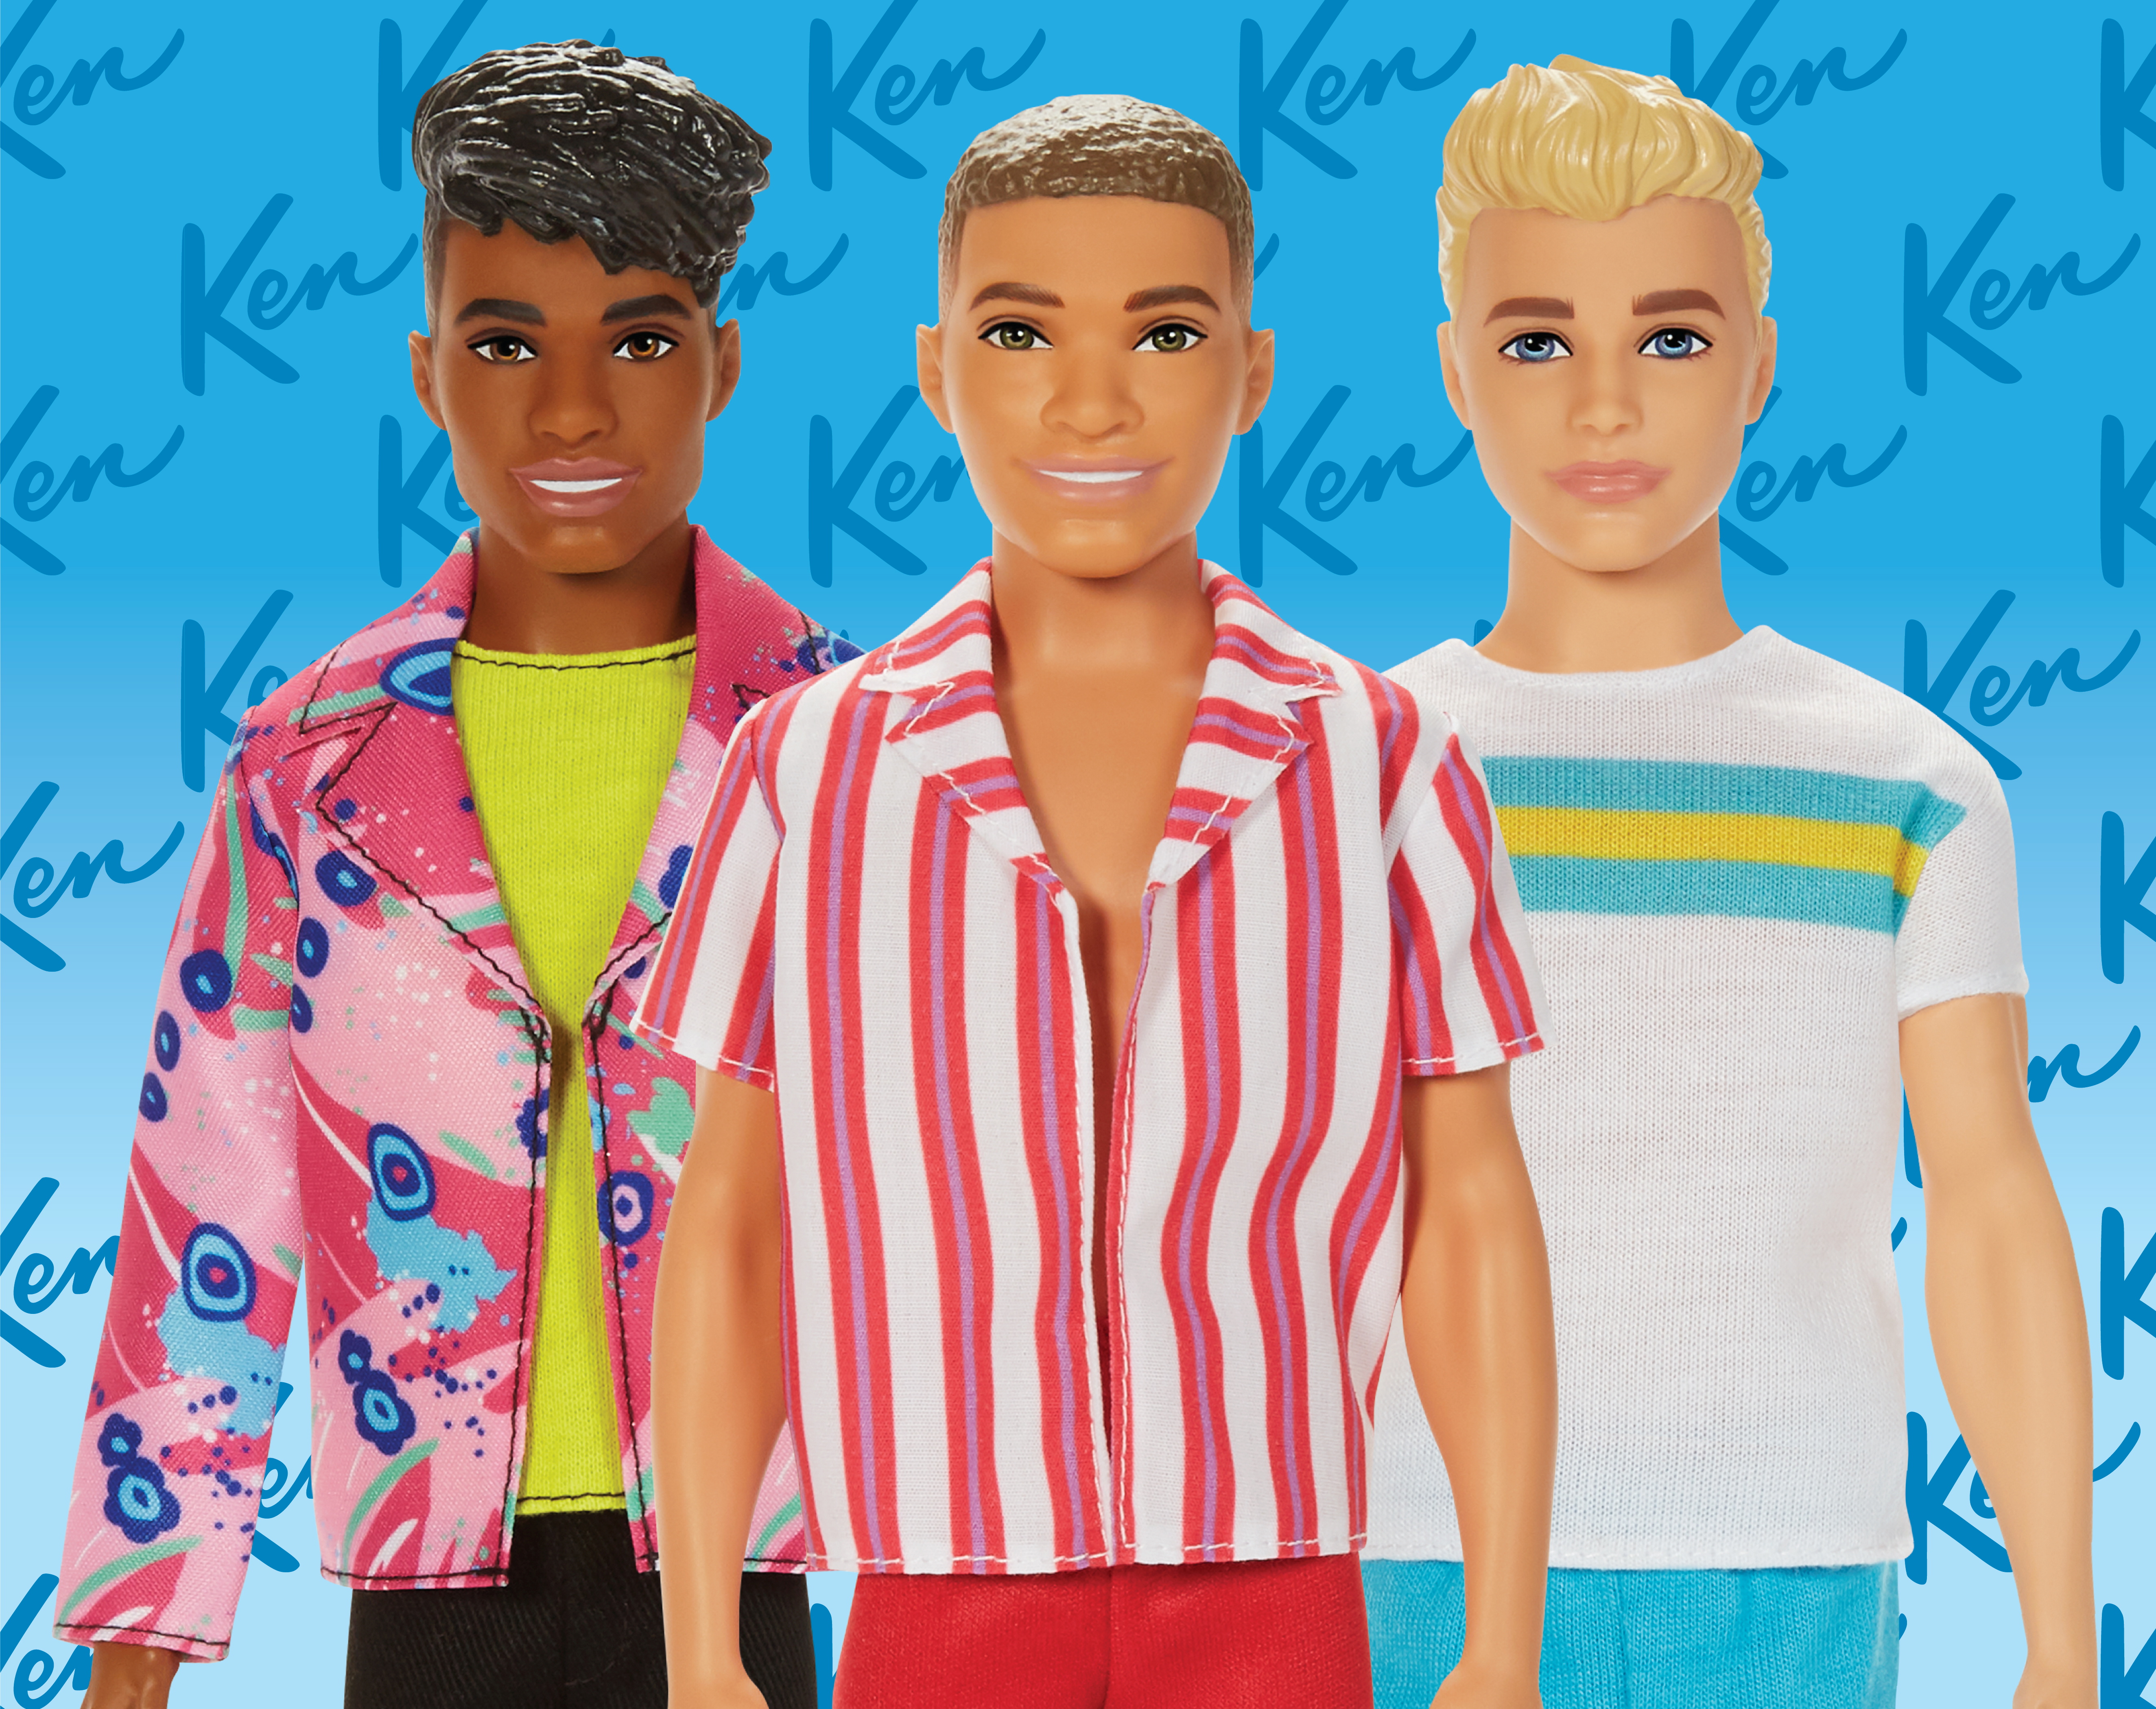 de ober Kantine Laatste Happy birthday Ken! Barbie's beau turns 60 | Reuters